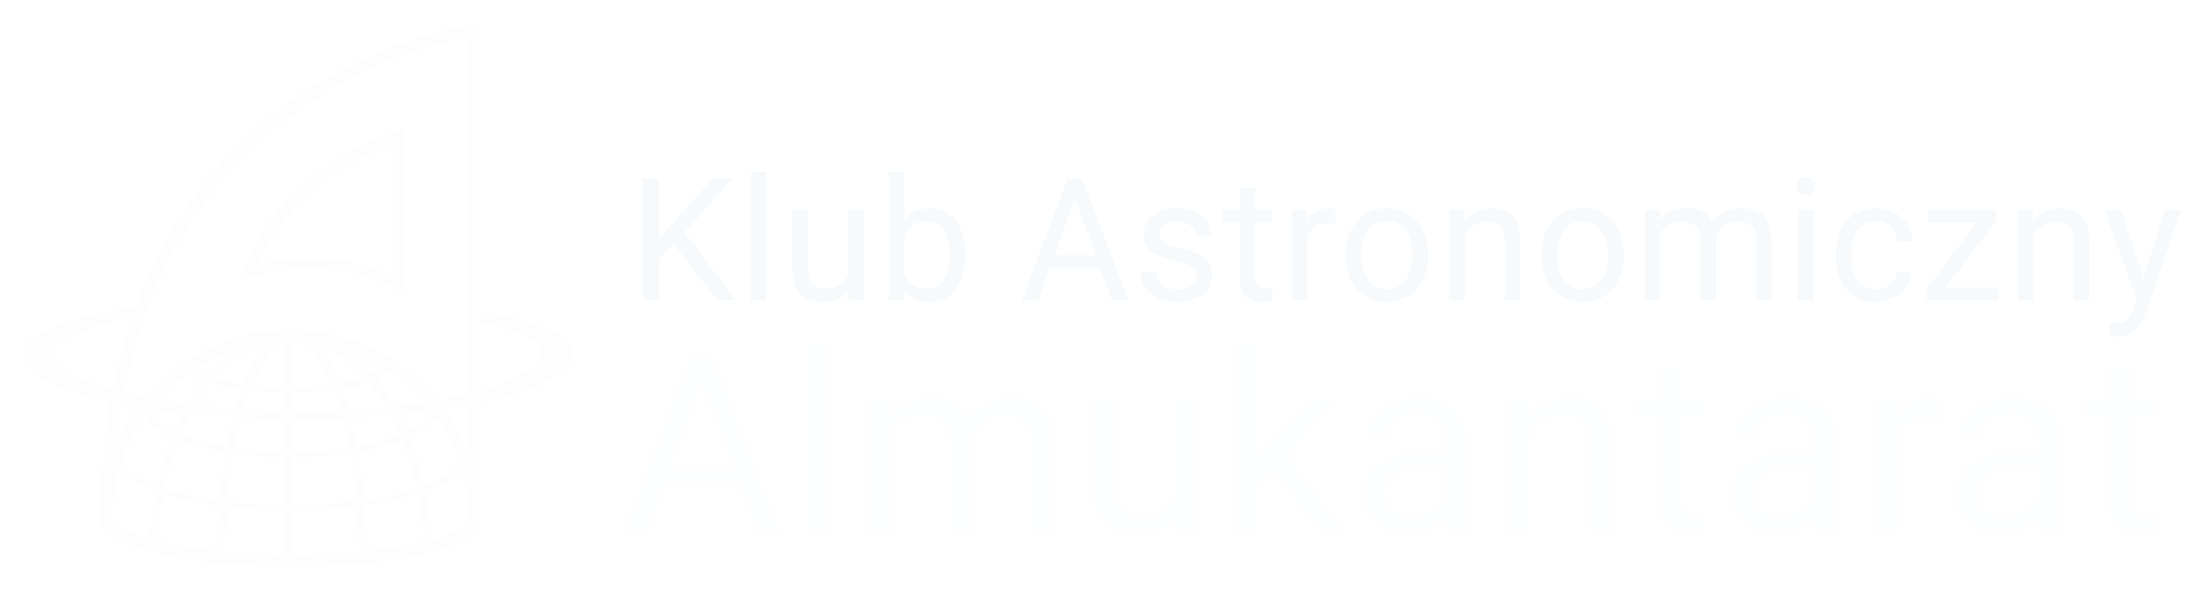 Jubileusz 40-lecia obozów astronomicznych Almukantarat